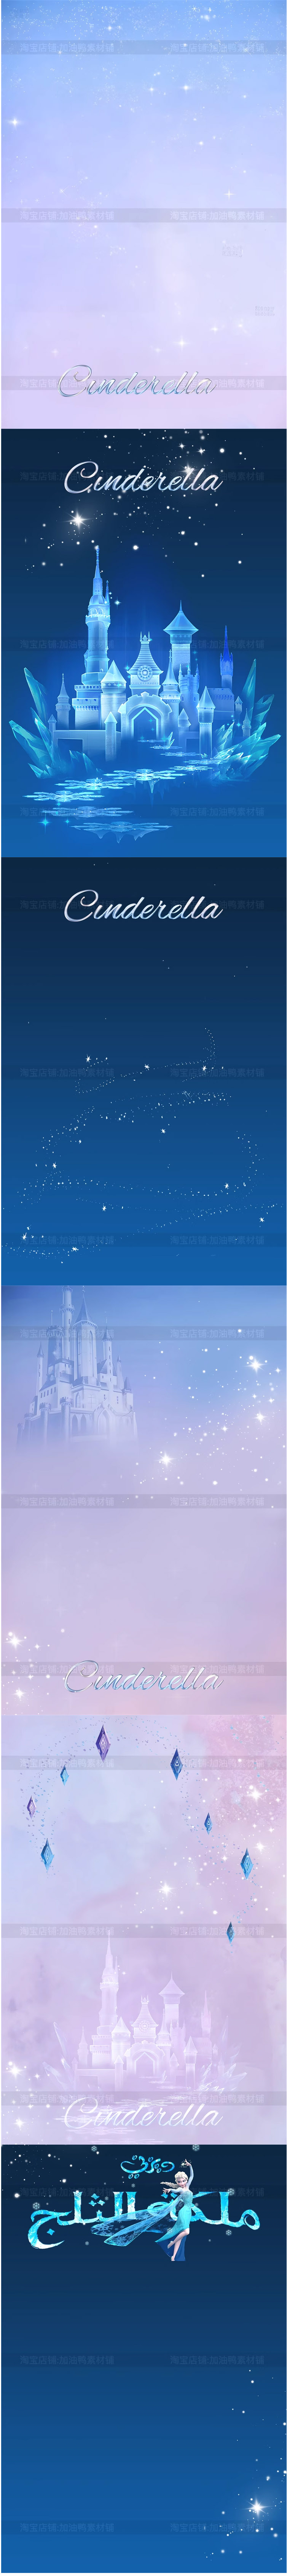 Y1110, Bộ 6 Psd Mẫu Vật Liệu Nền Thiết Kế ảnh Trẻ Em Chủ đề Công Chúa Disney Elsa Và Lâu đài Băng Tuyết 2 Copy